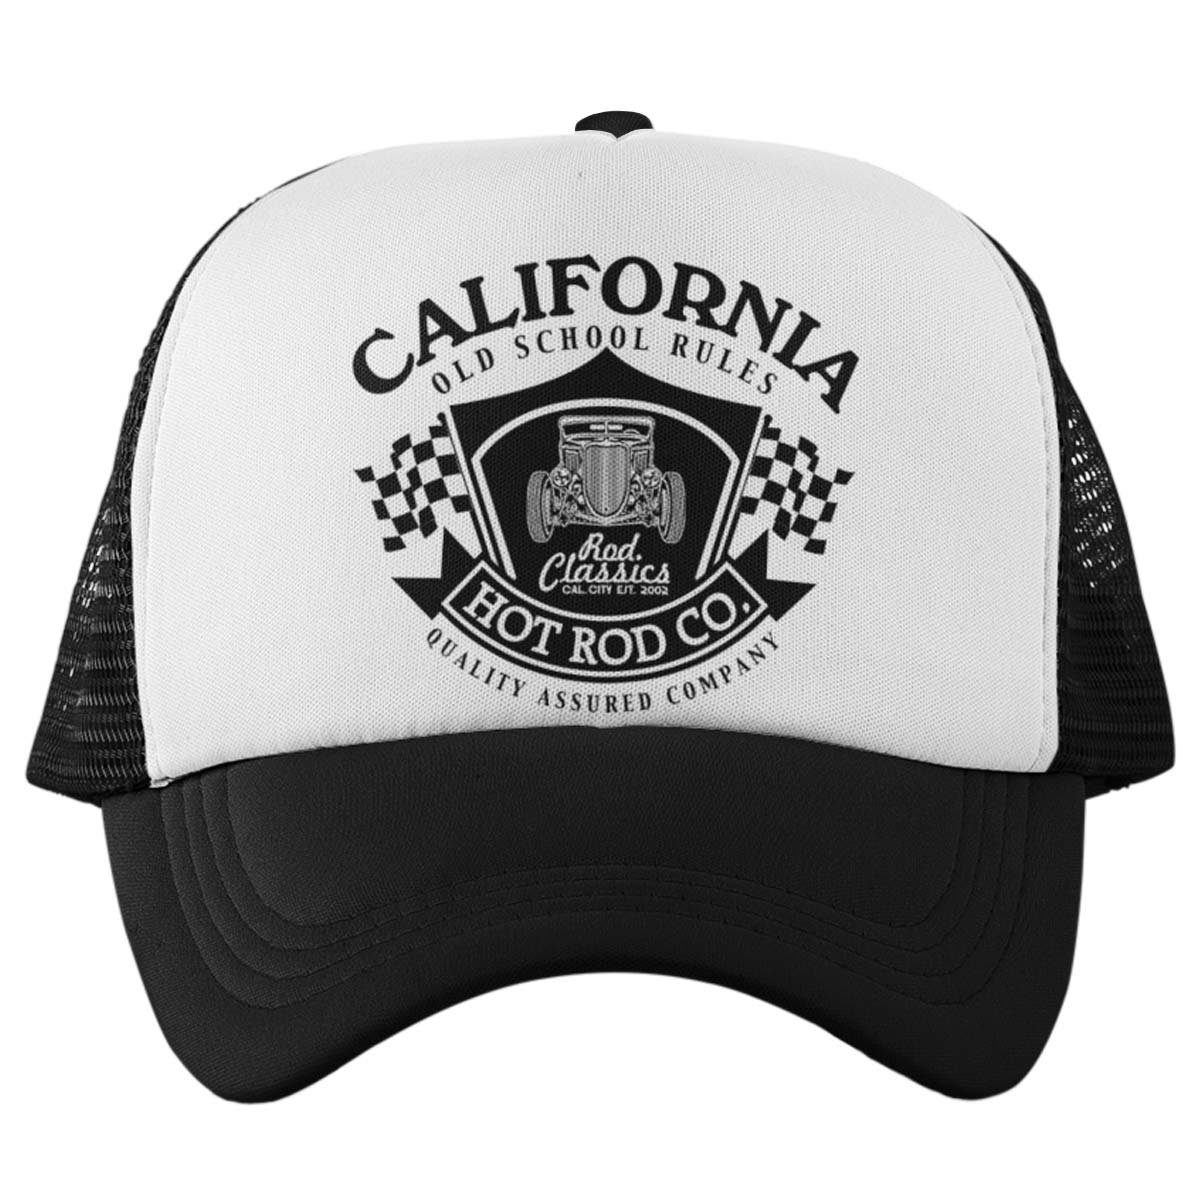 Baseball Hotrod Wheels On Visor California Rebel Trucker Curved Cap Cap